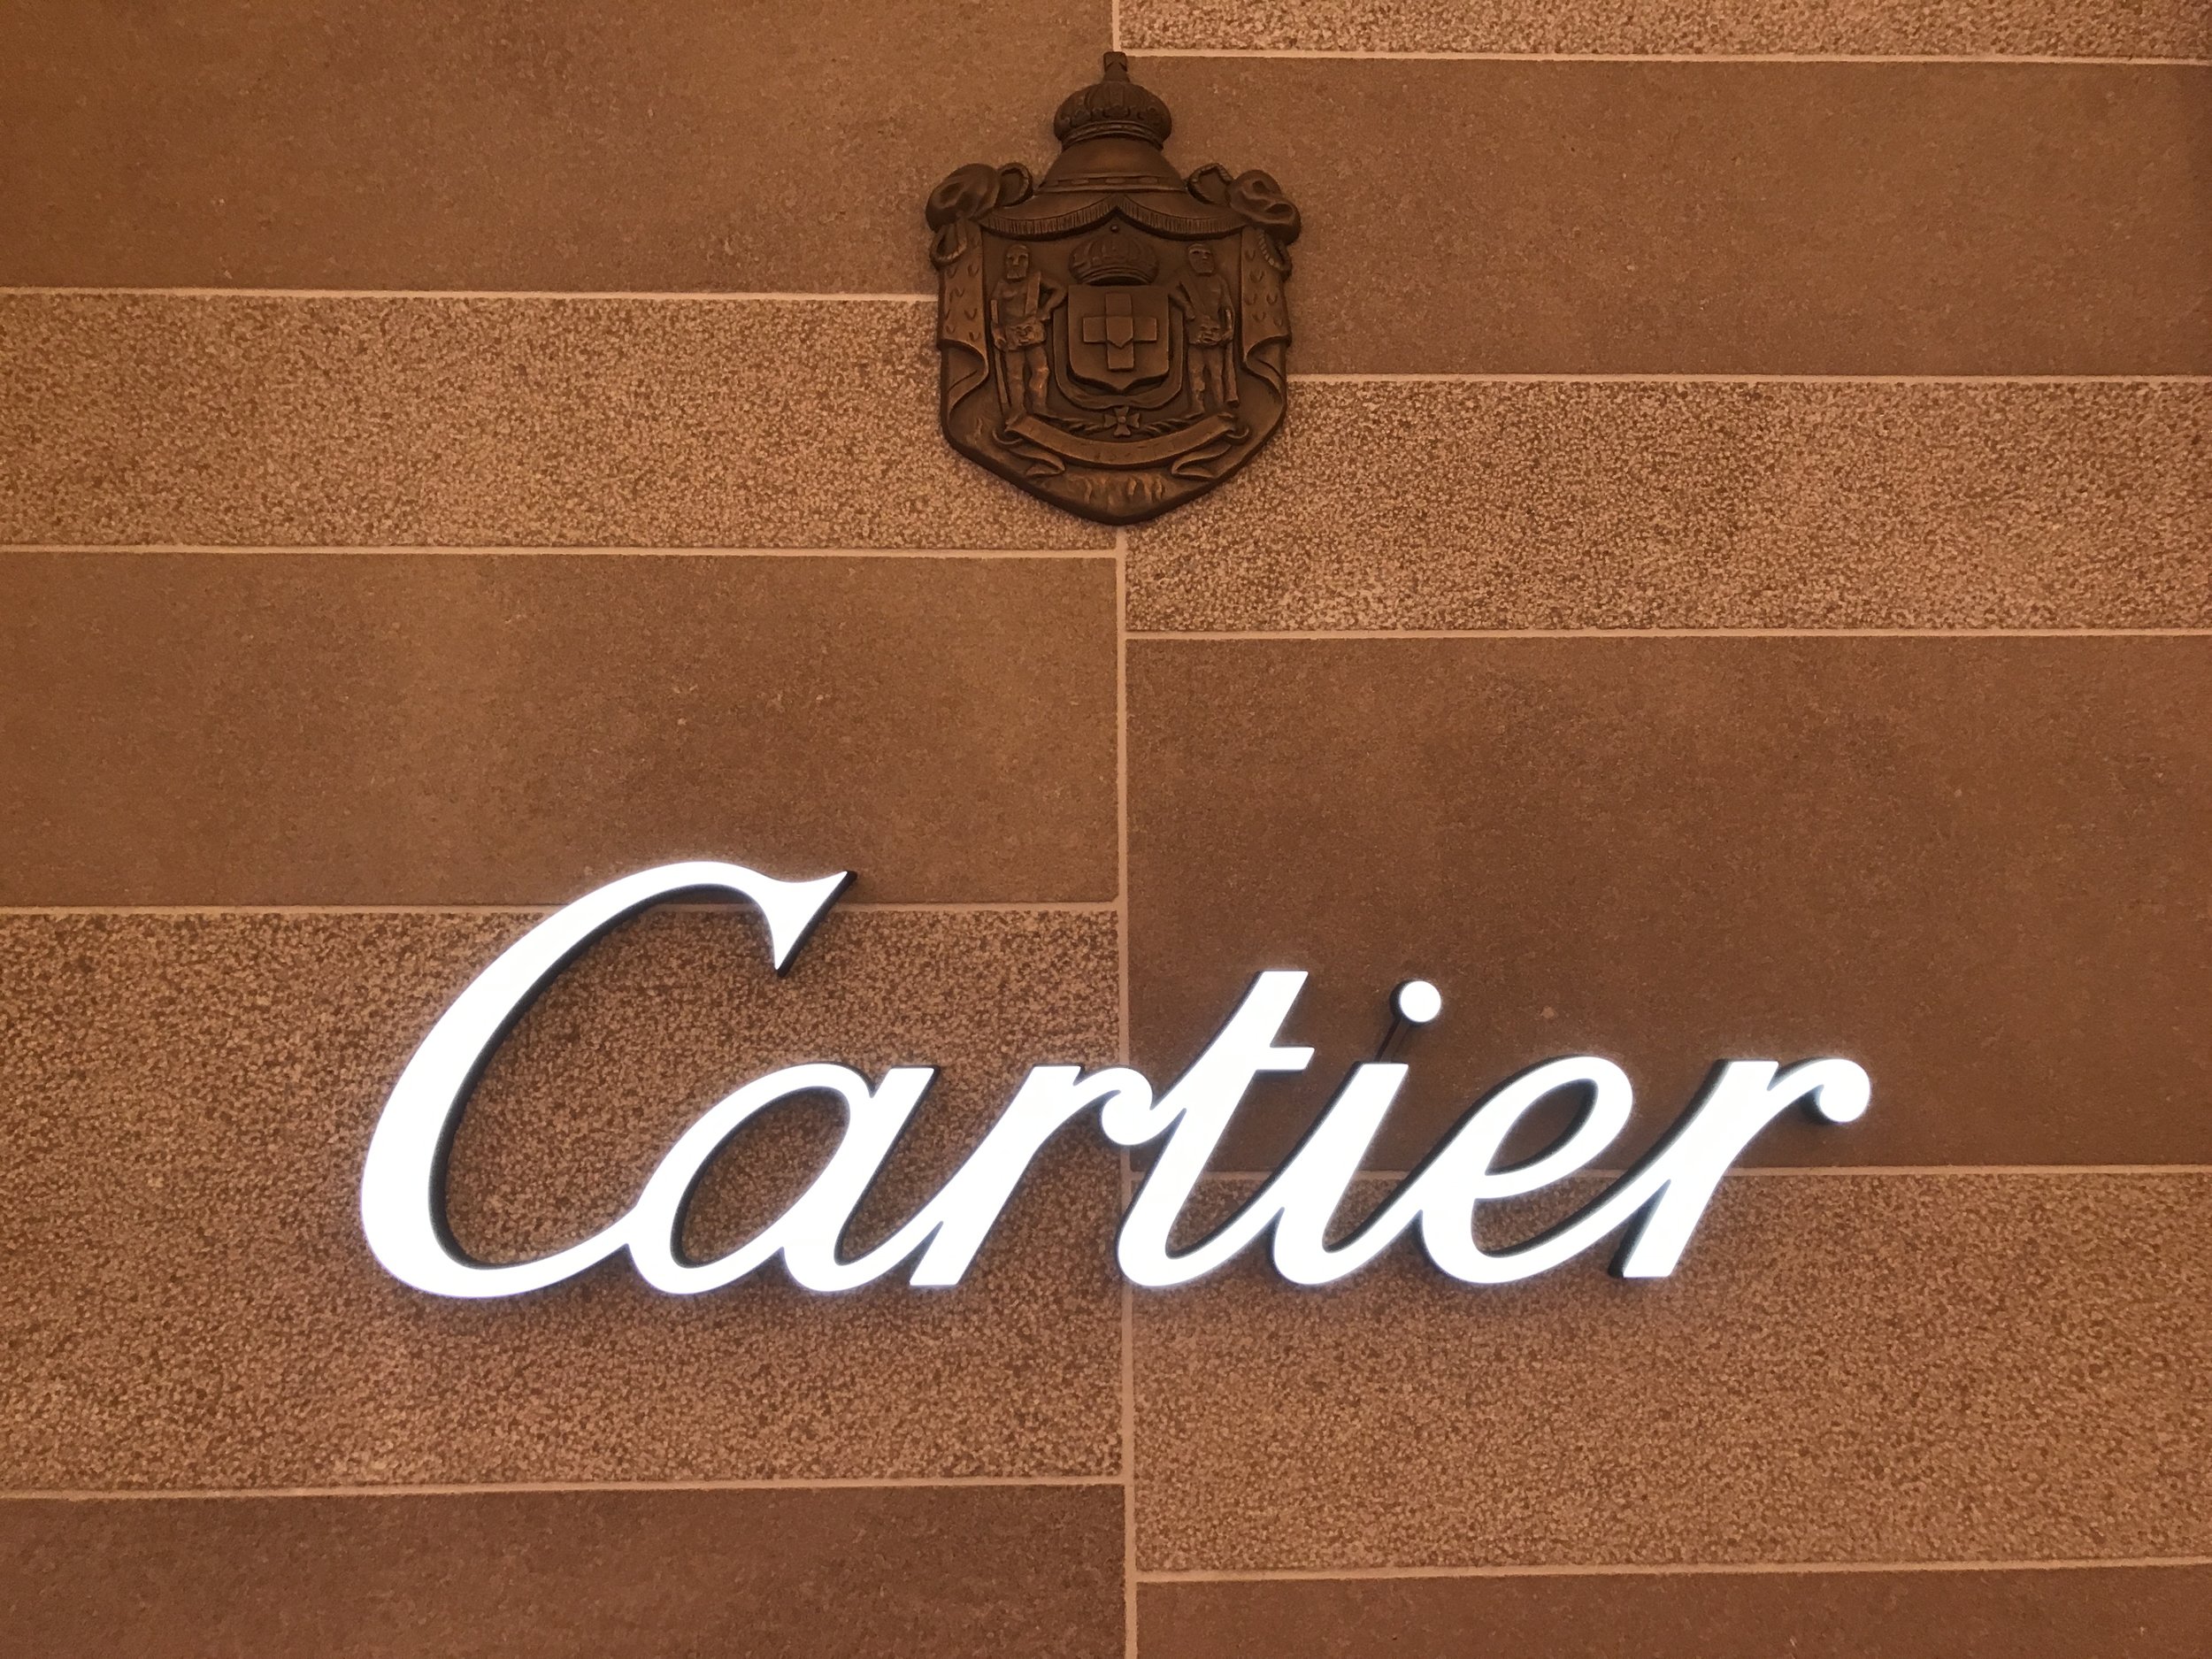 cartier logo jpg